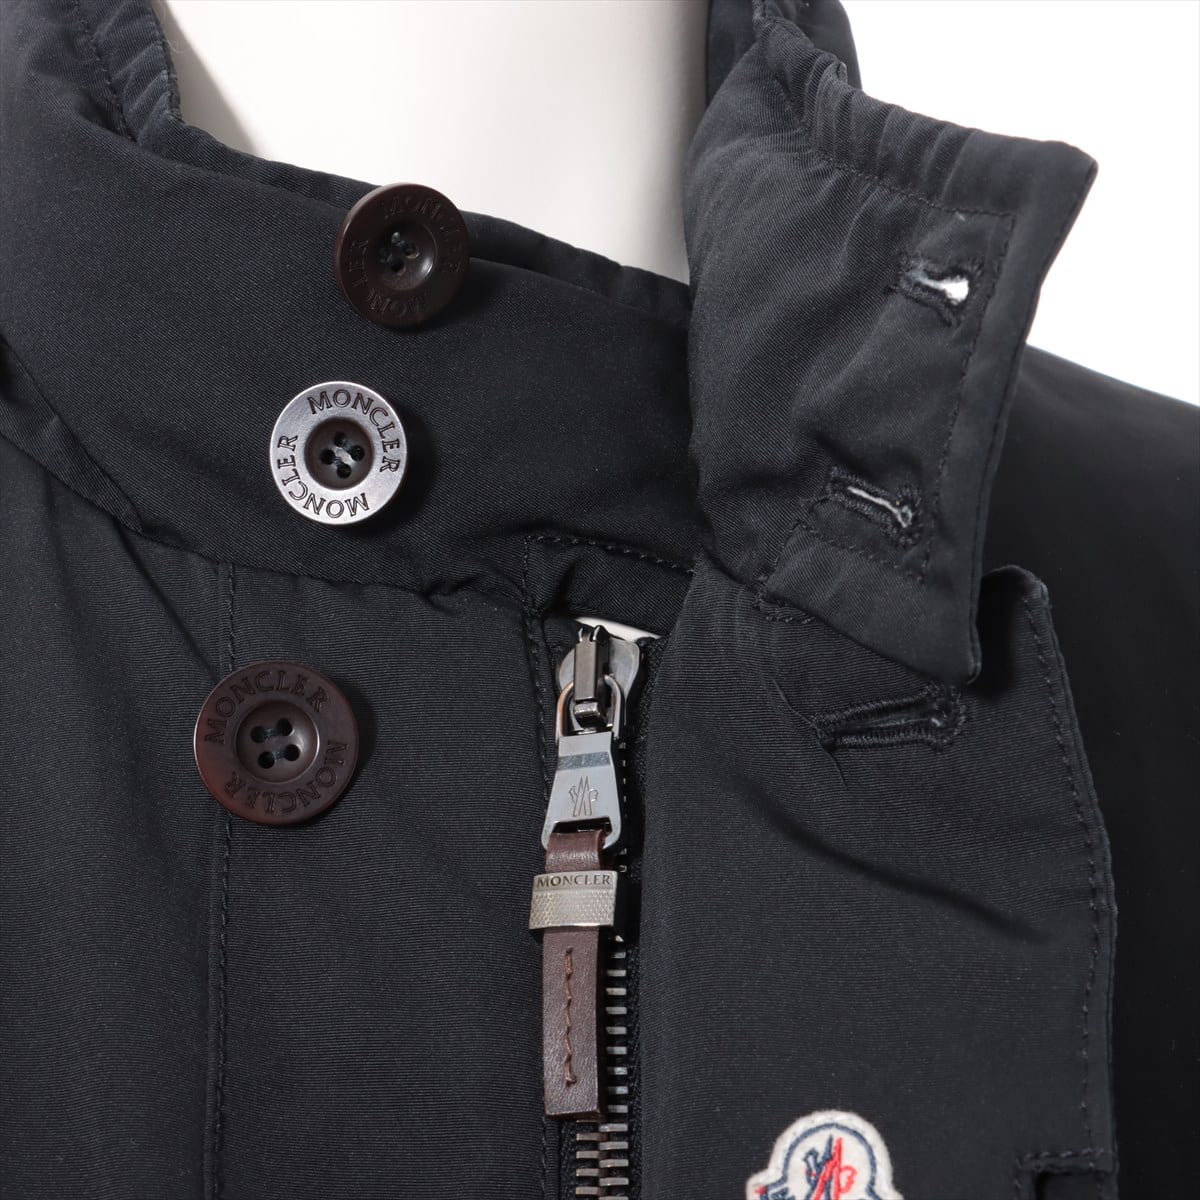 Moncler 07 Cotton & polyester Down coat 4 Men's Black  44516